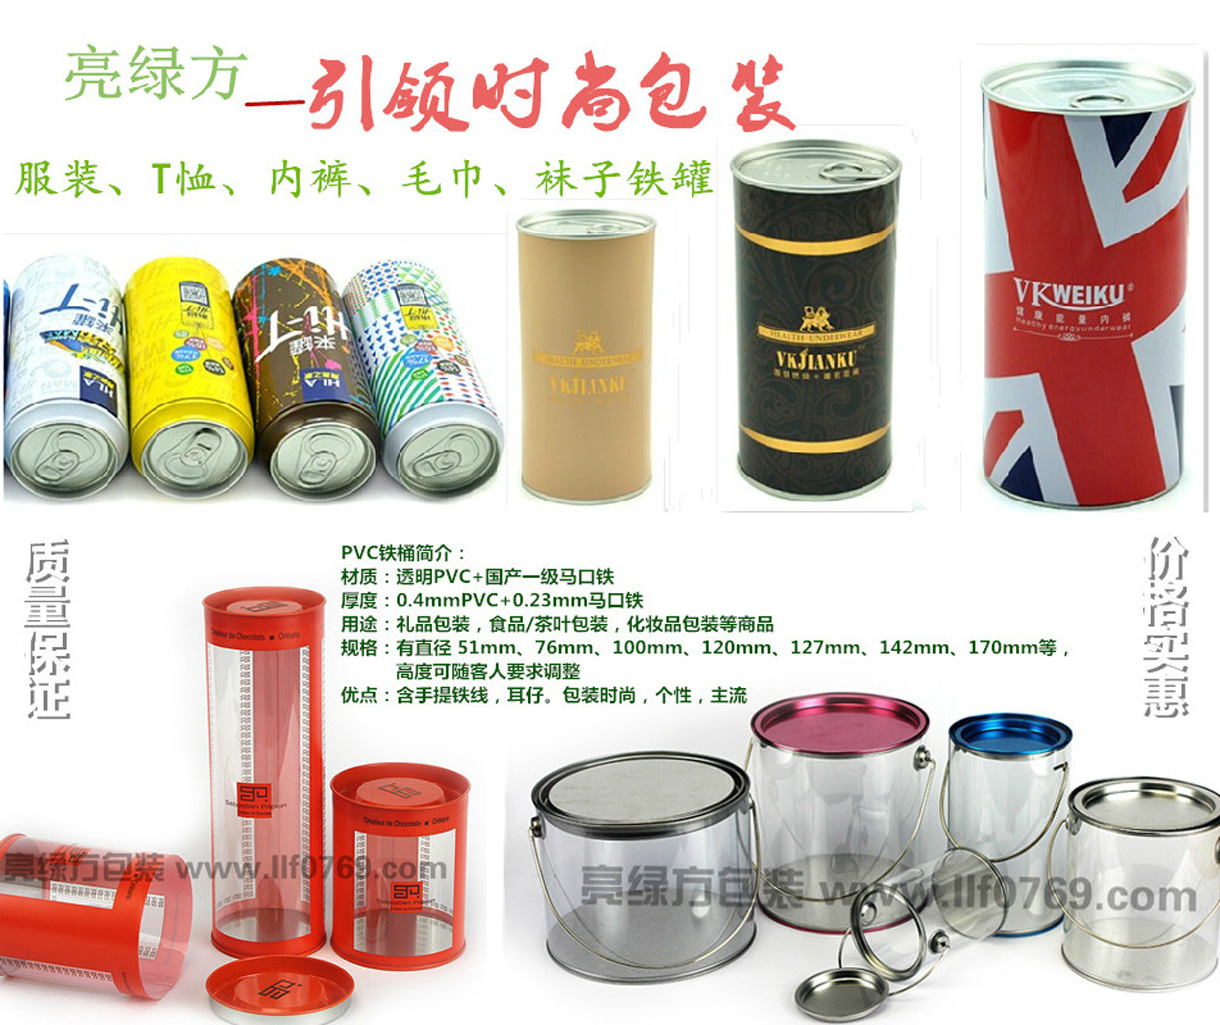 东莞市亮绿方包装制品有限公司-中国国际包装展-中国包装容器展